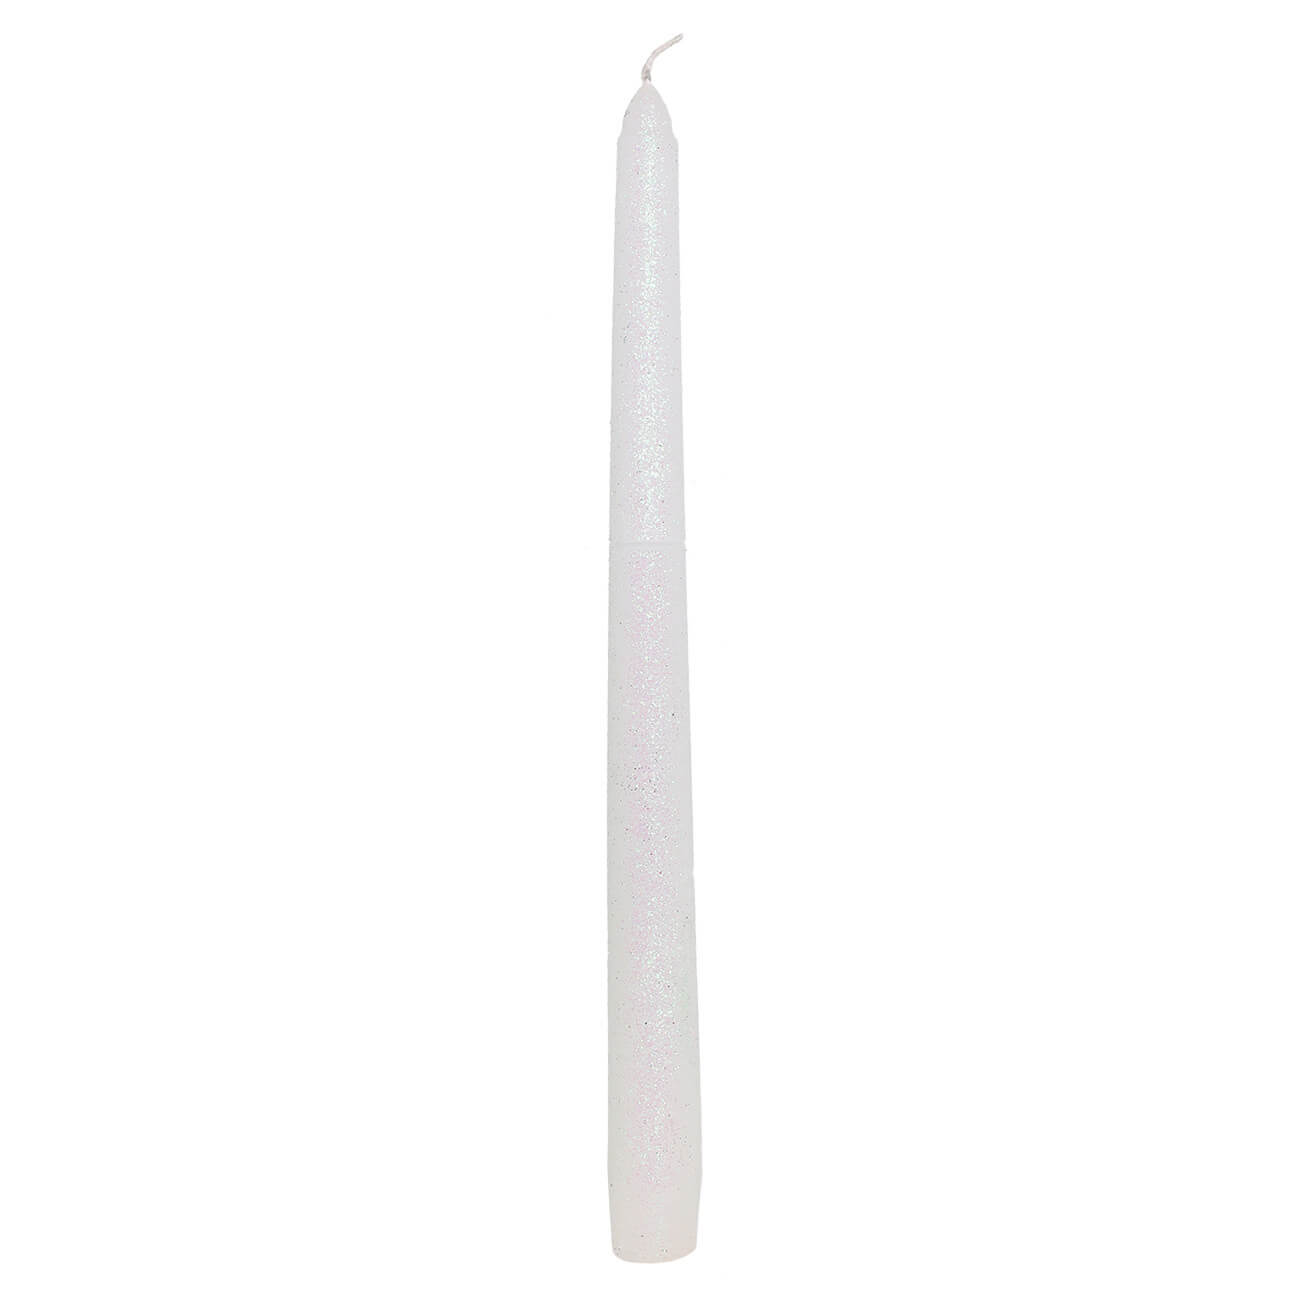 Свеча, 25 см, тонкая, белая, Metallic glow свеча декоративная тонкая с гранями 2х26см пальмовый воск белая 2 ч